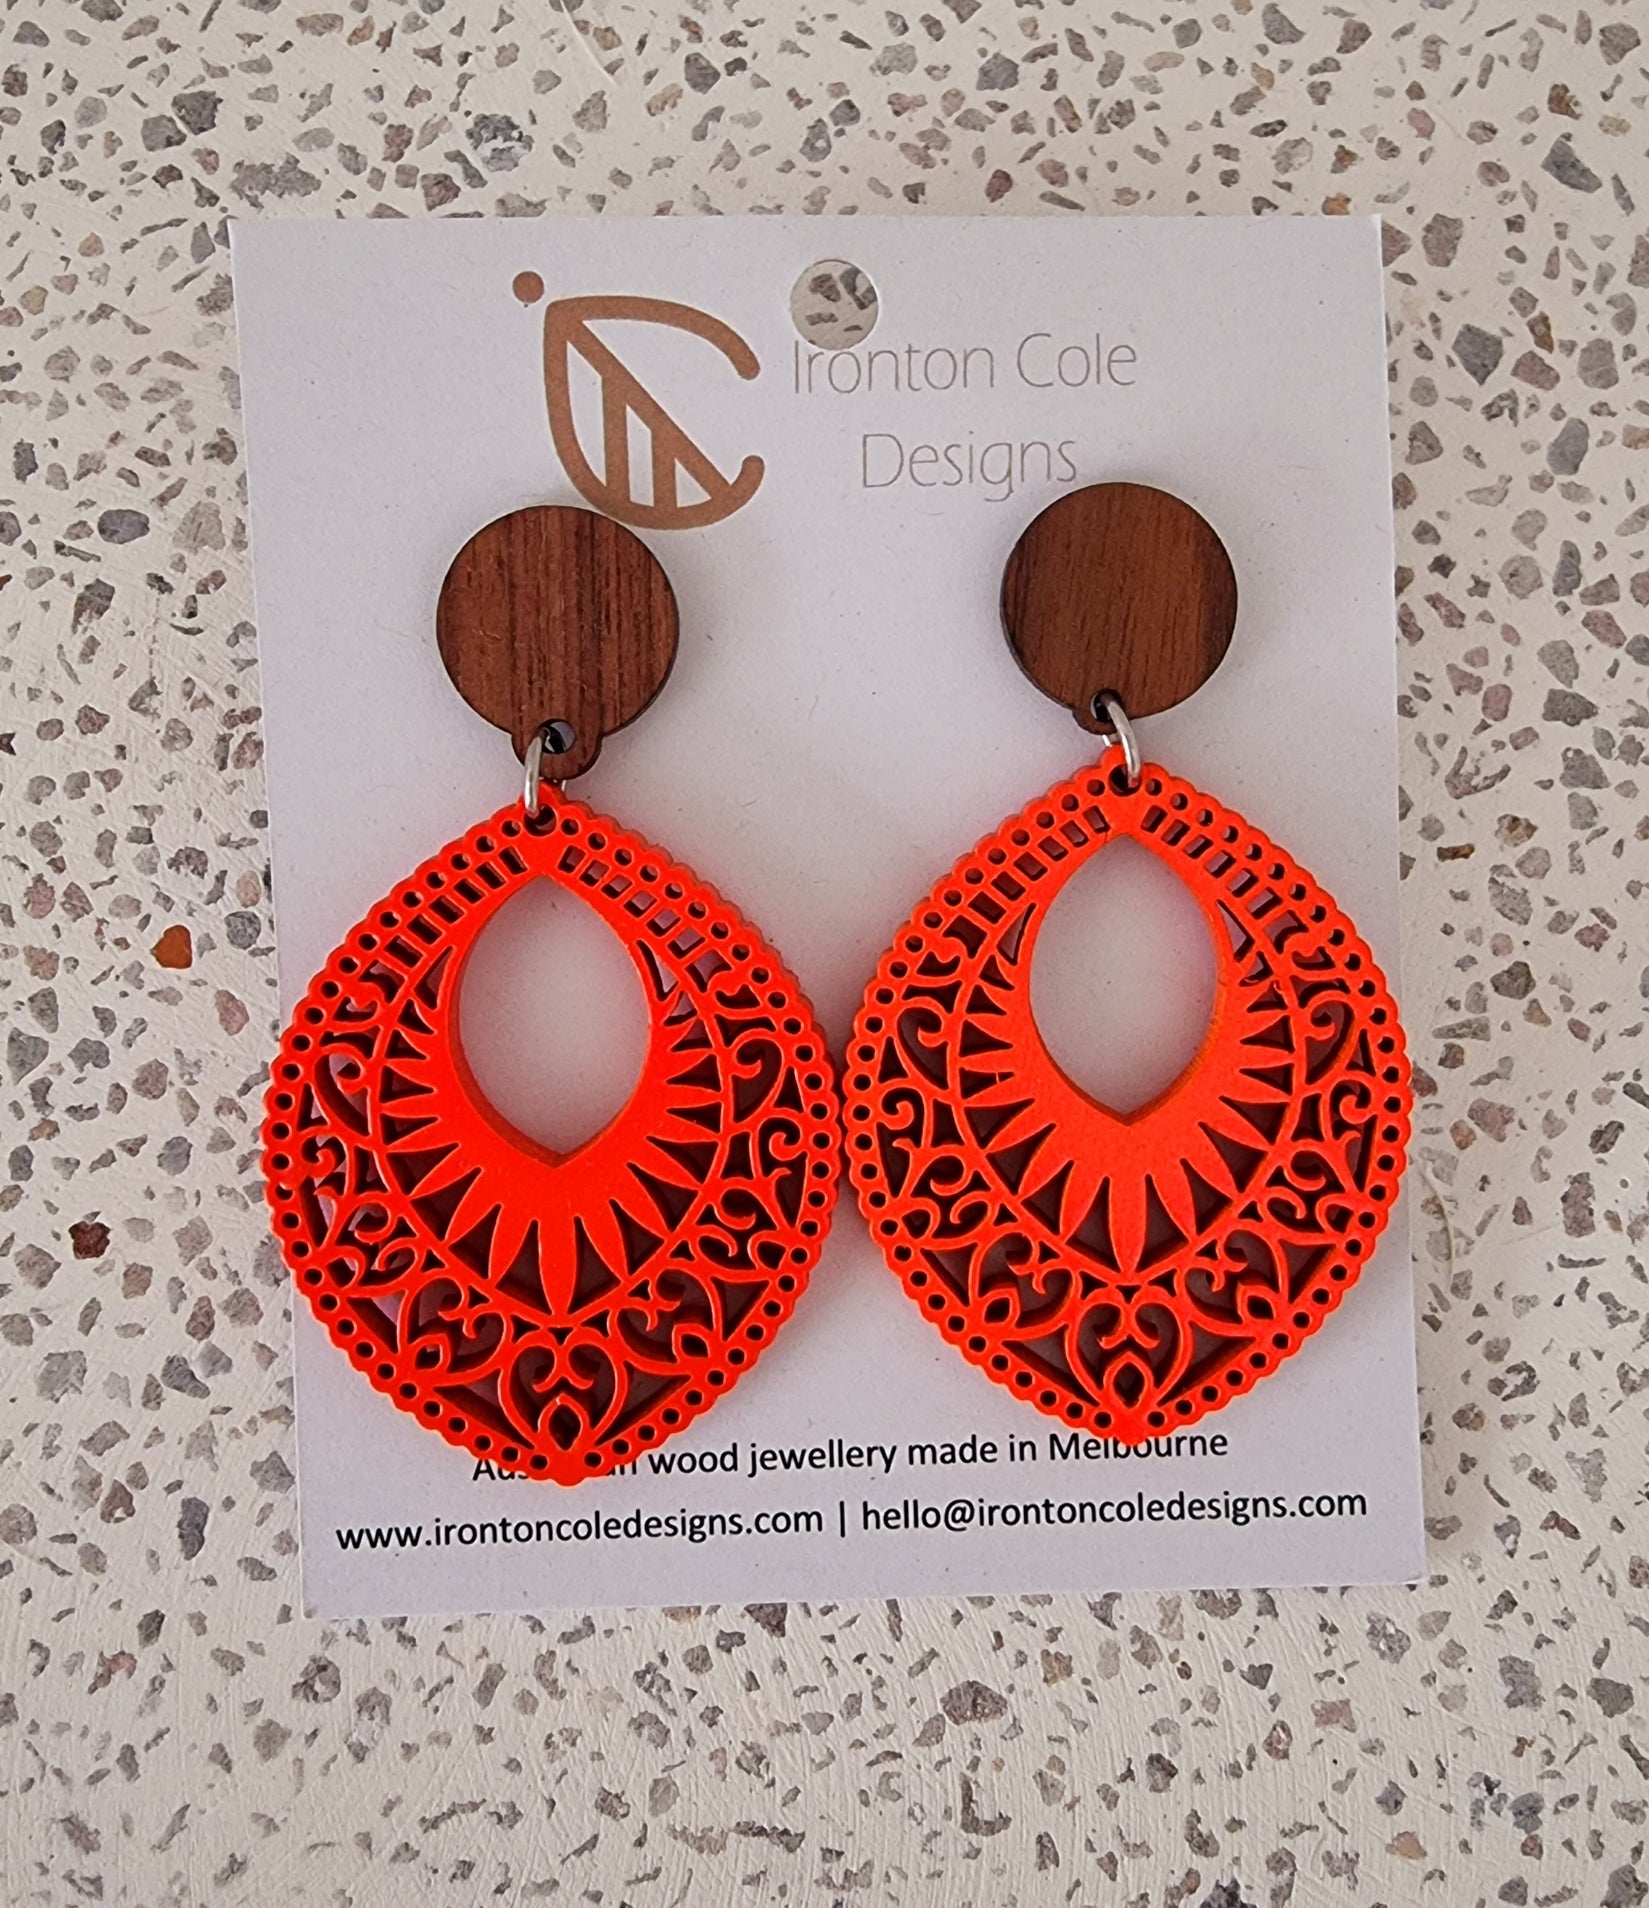 Fluro wooden earrings